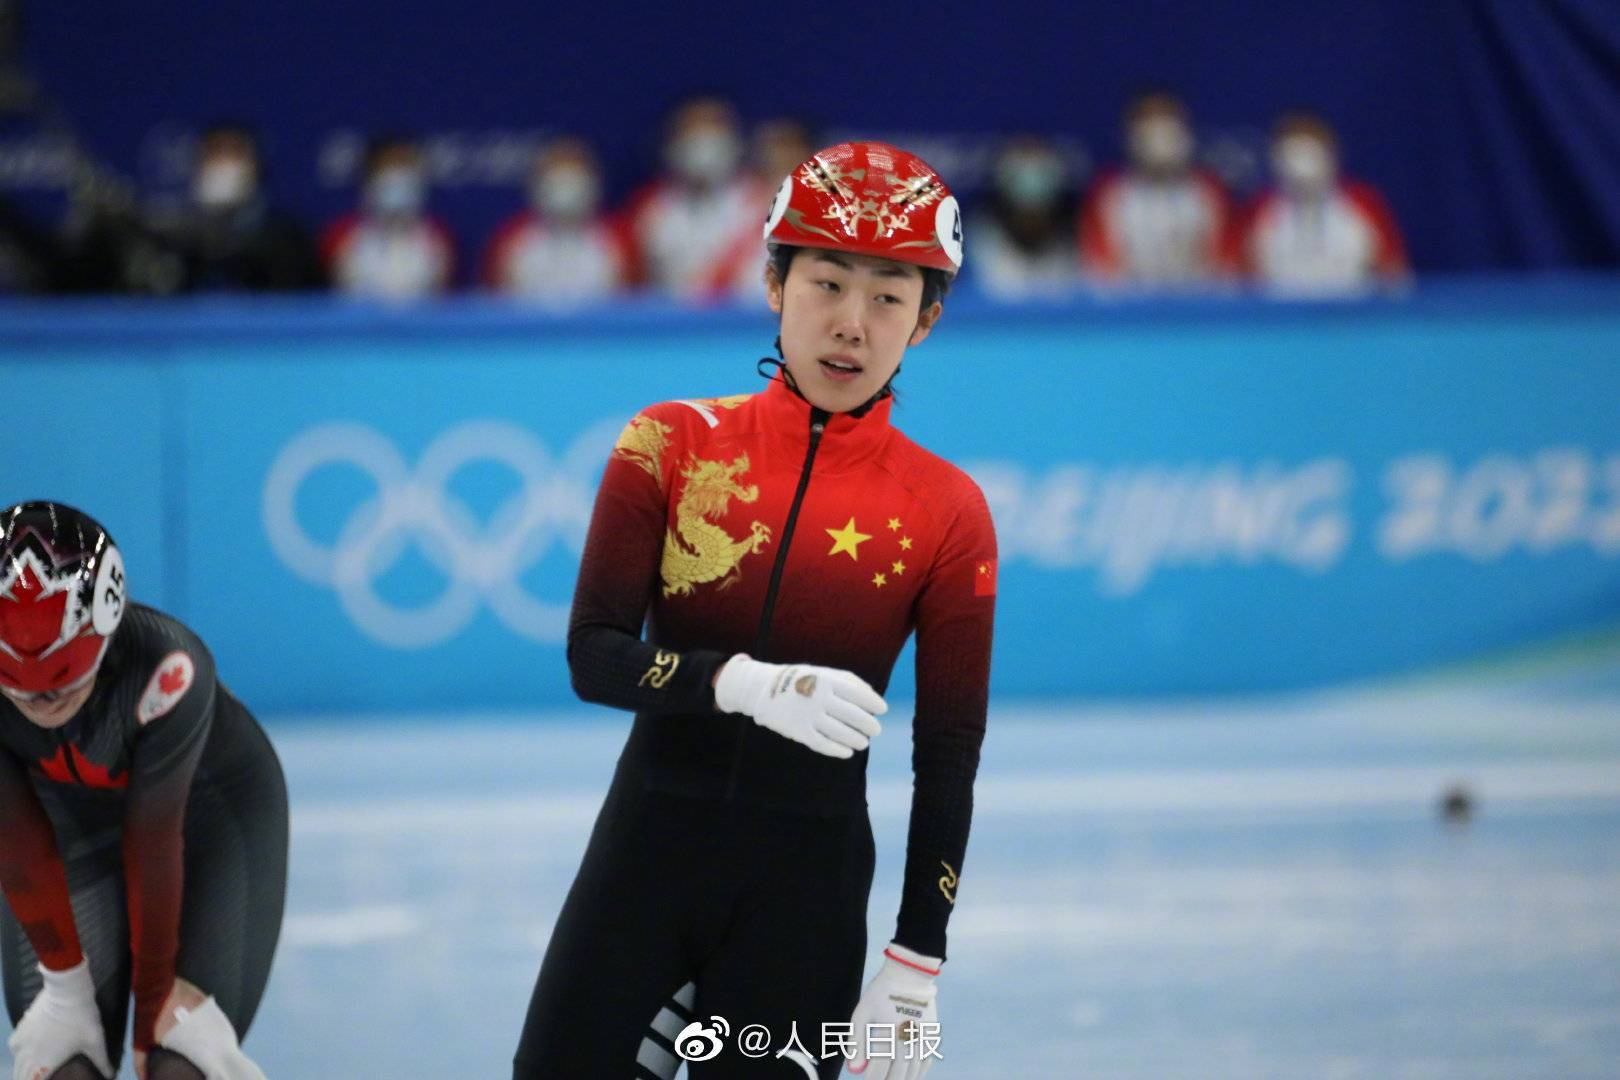 女子|张雨婷获得短道速滑女子500米第四名